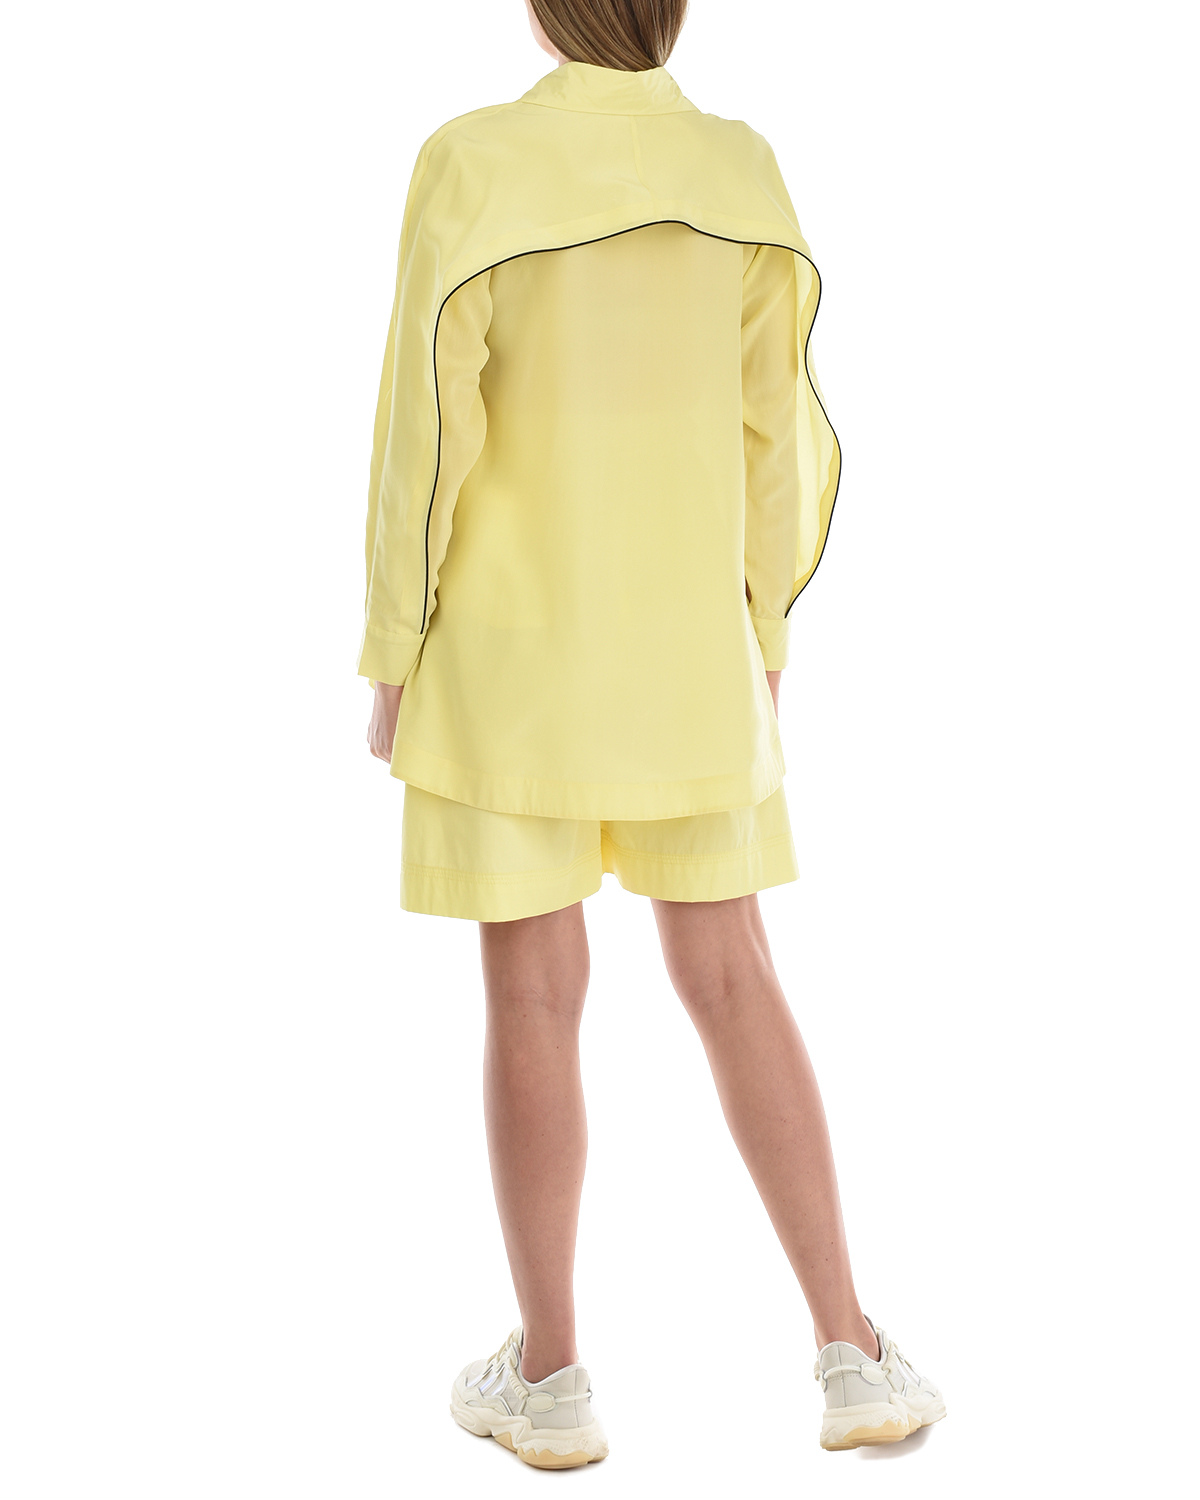 Шелковая блуза лимонного цвета LOVE BIRDS, размер 40 - фото 6